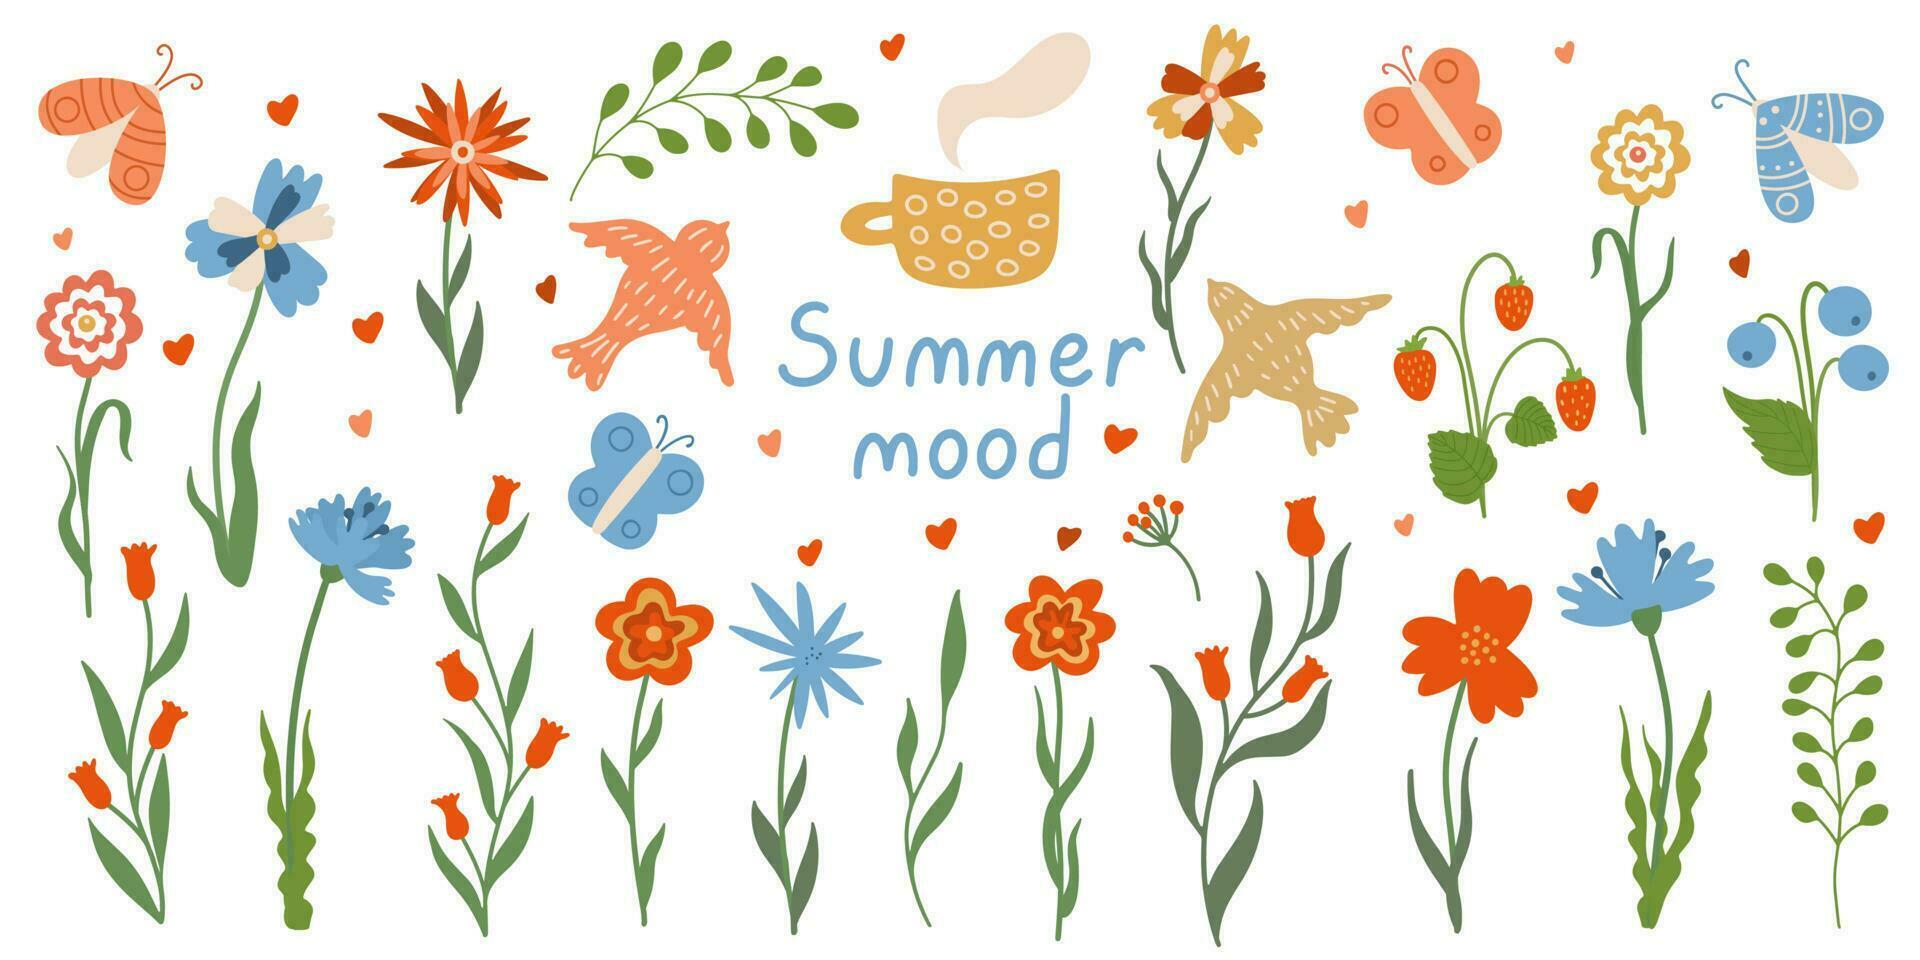 flores silvestres colocar. verano floral recopilación. mano dibujado plano vector ilustración de prado flores, mariposas y volador aves. verano estado animico letras.